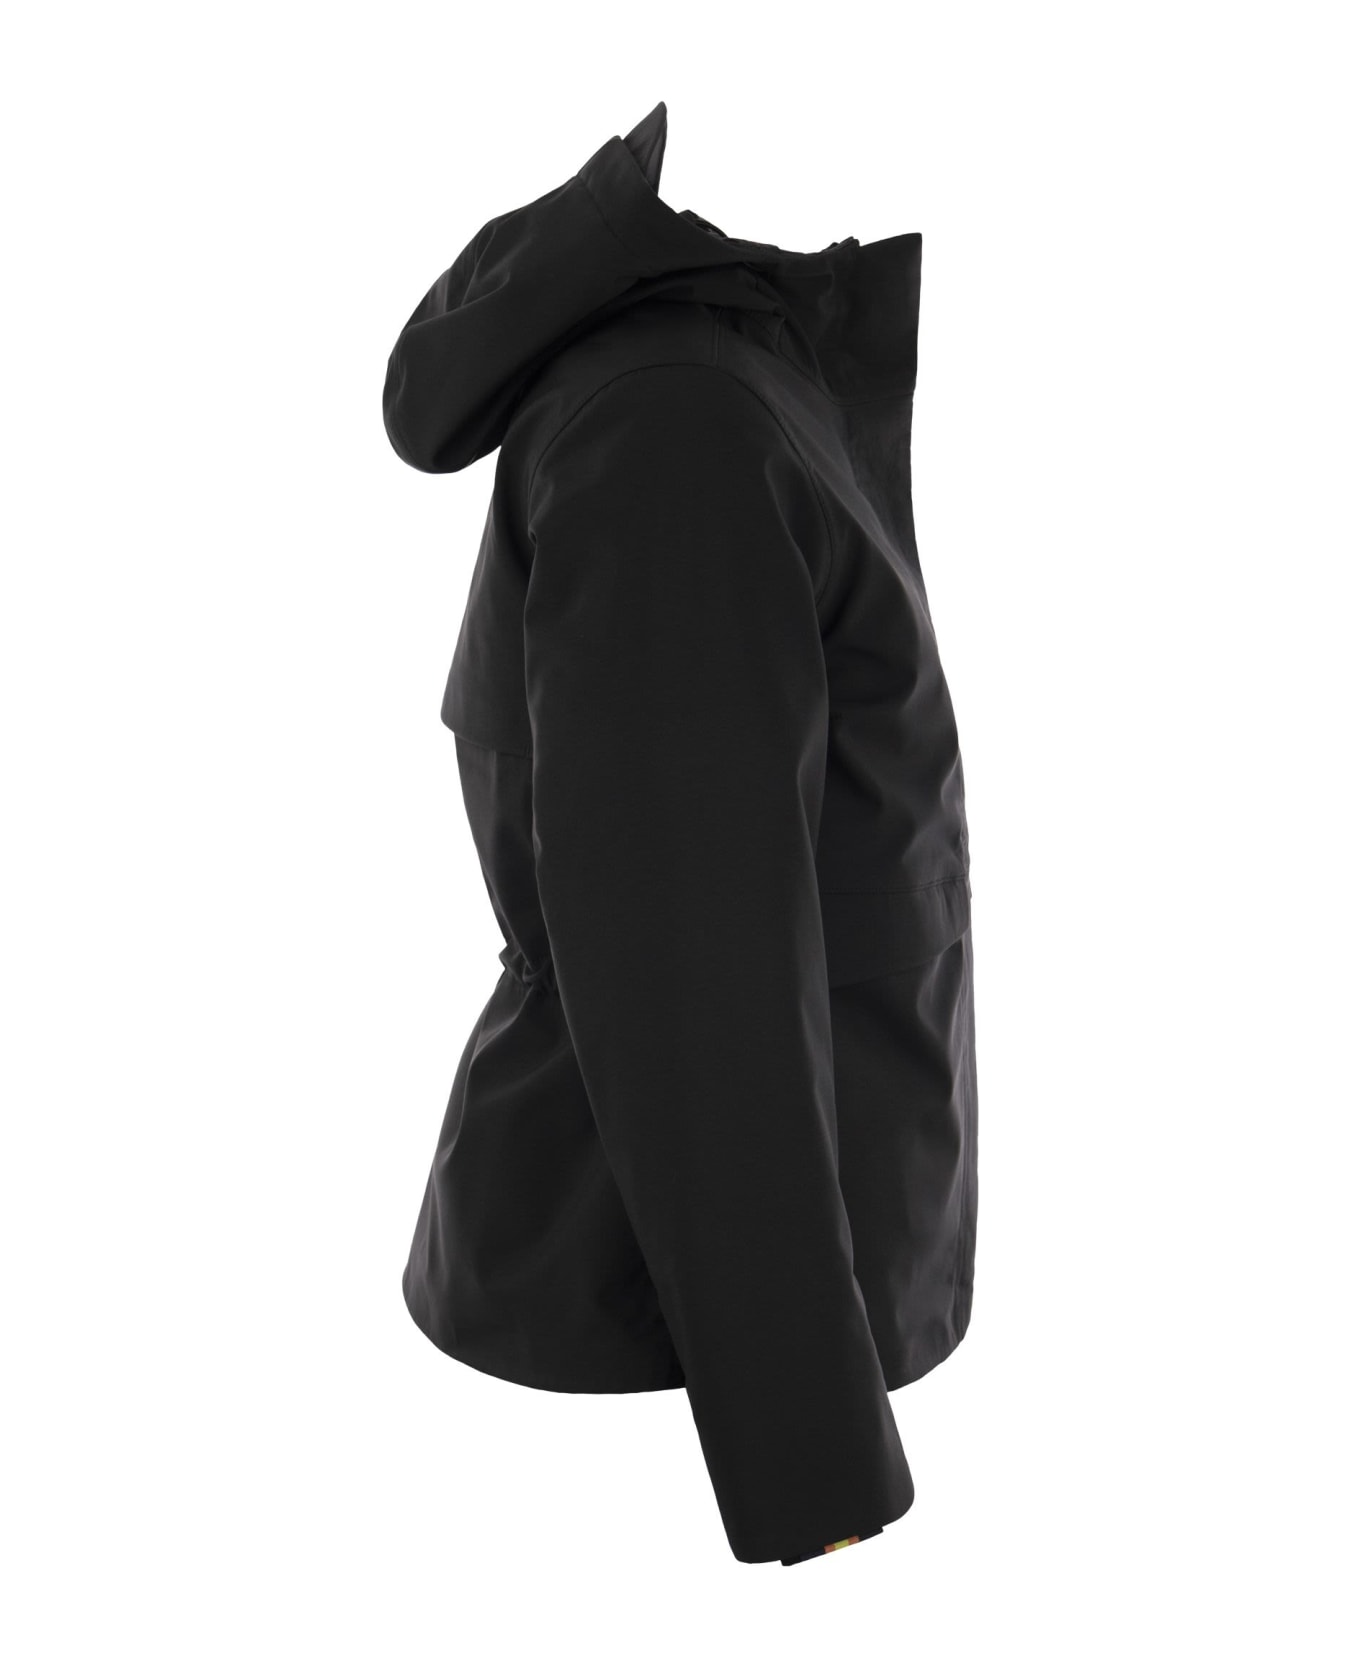 K-Way Dorel Bonded - Hooded Jacket - Black